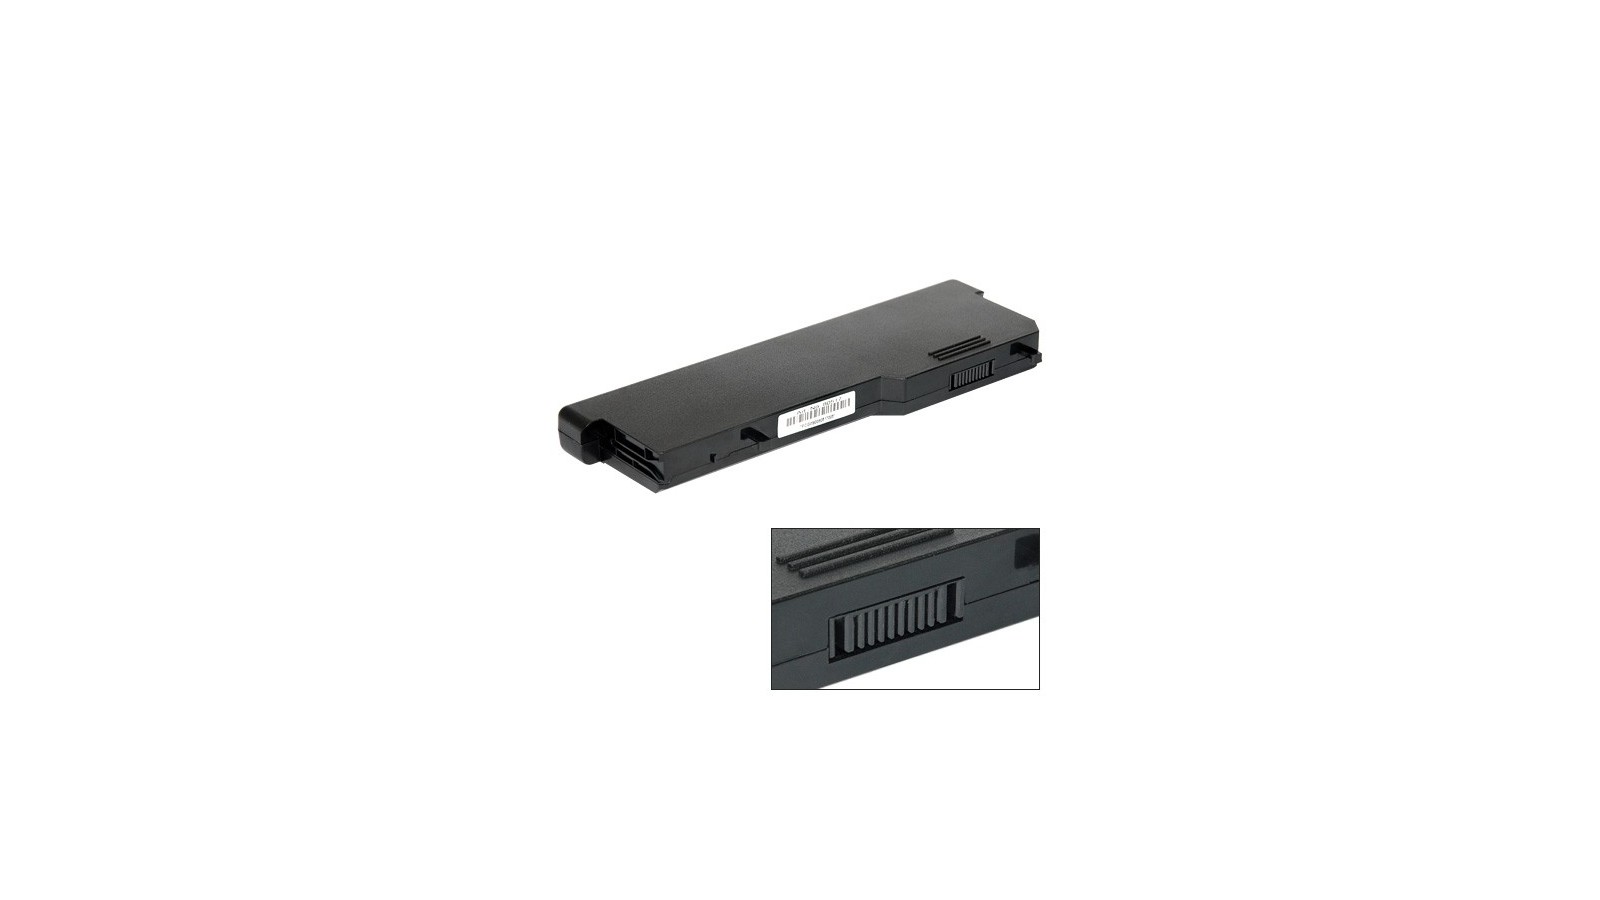 Batteria compatibile con Dell Vostro 1310 / 1320 / 1510 / 1511 / 1520 / 2510